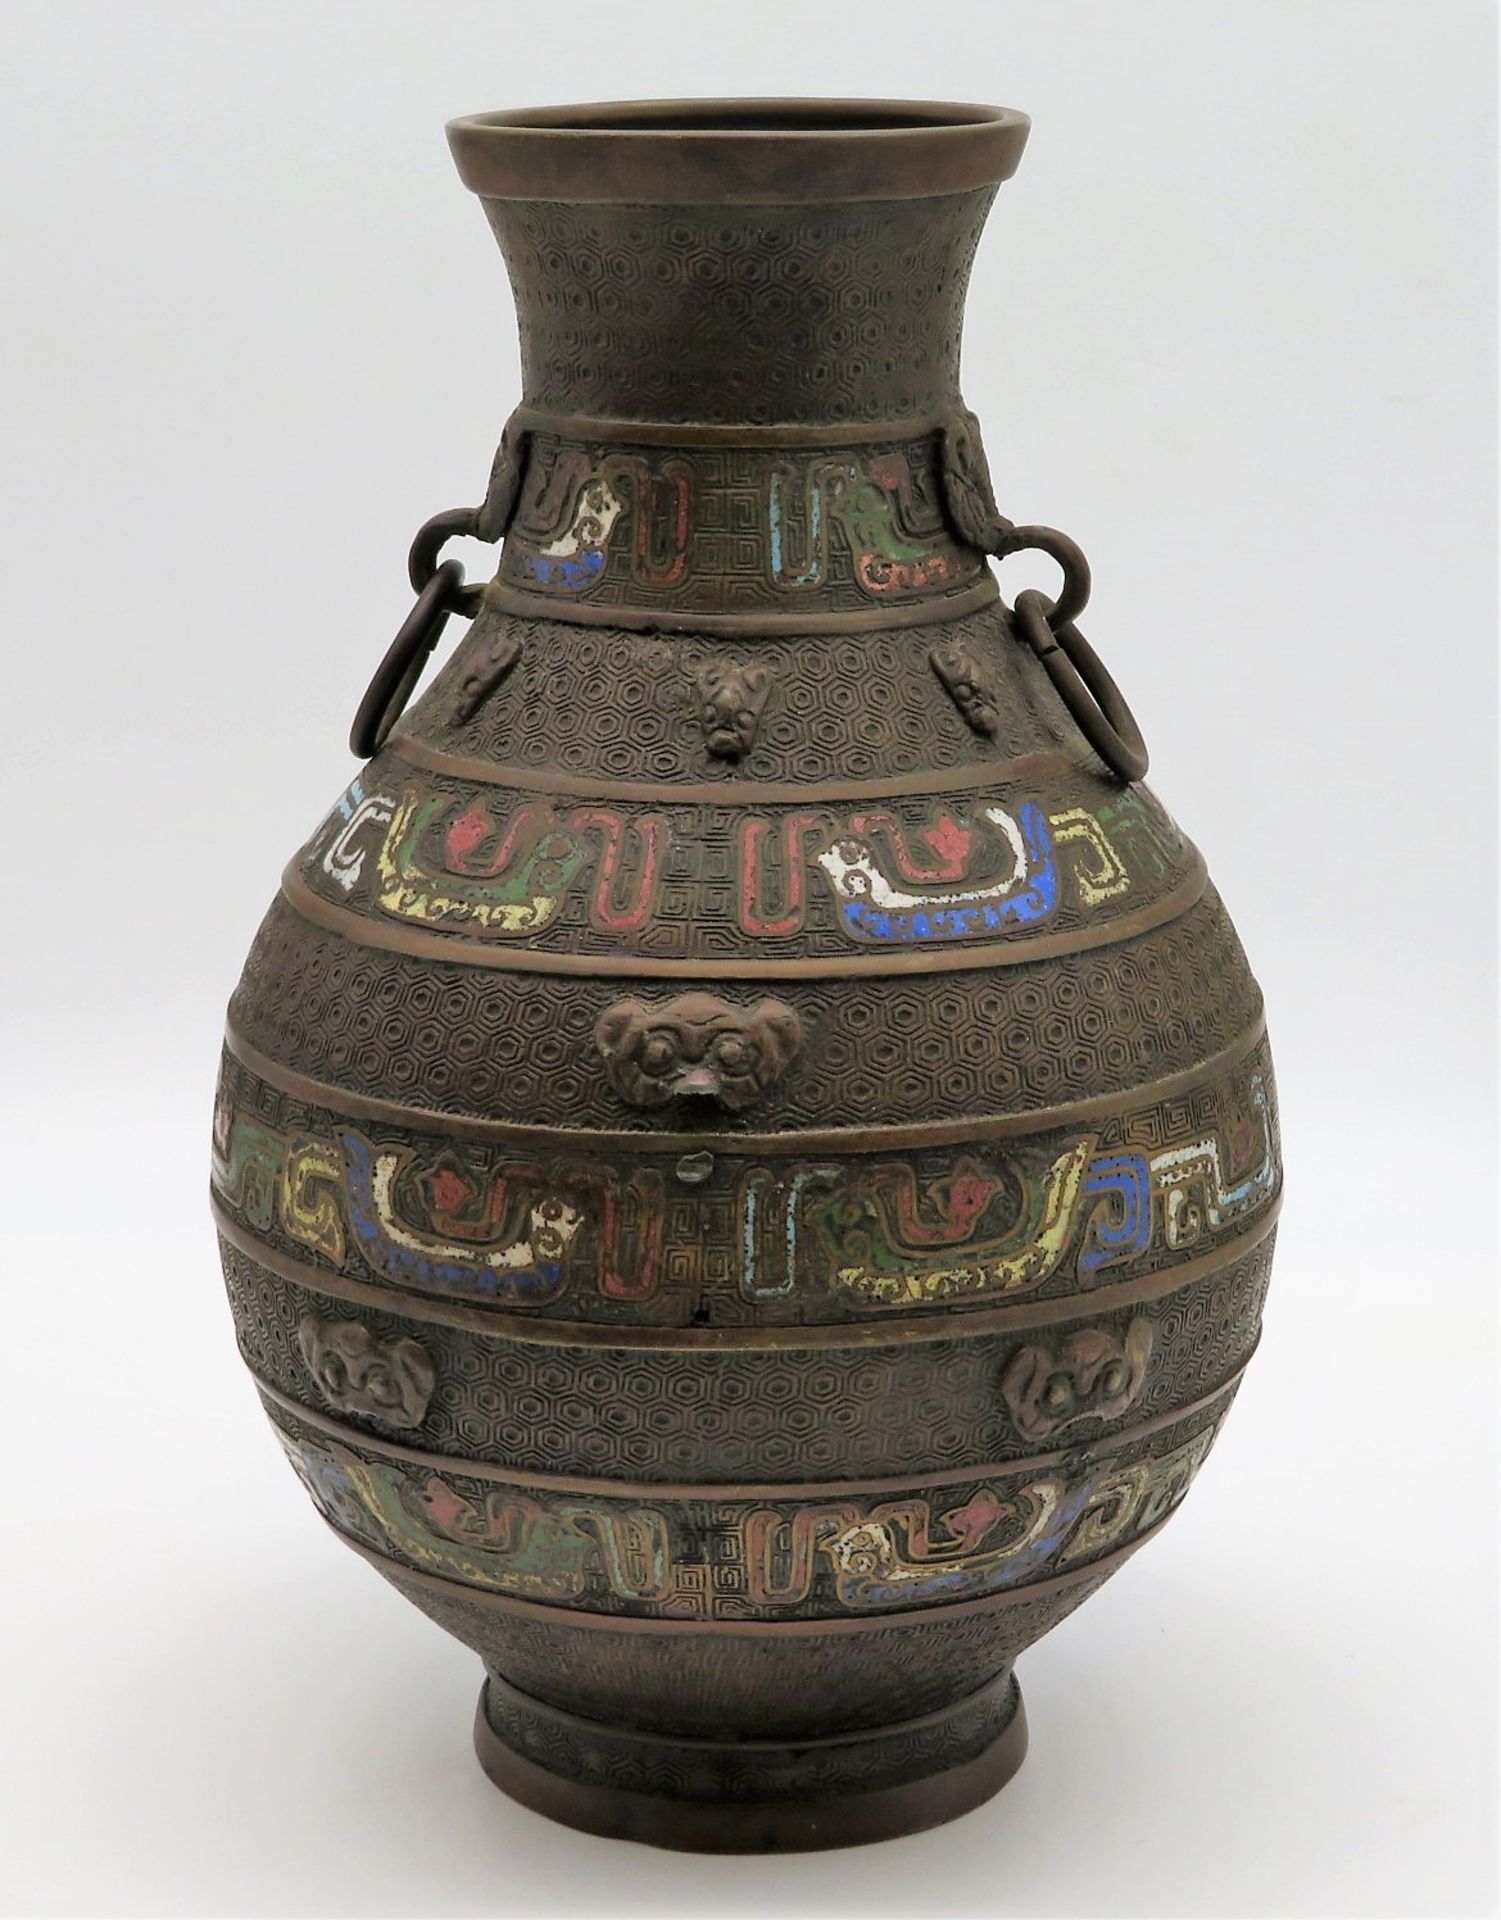 Cloisonné Vase, China, um 1900, Bronze mit farbigen Einschmelzungen, h 31,1 cm, d 19,5 cm.